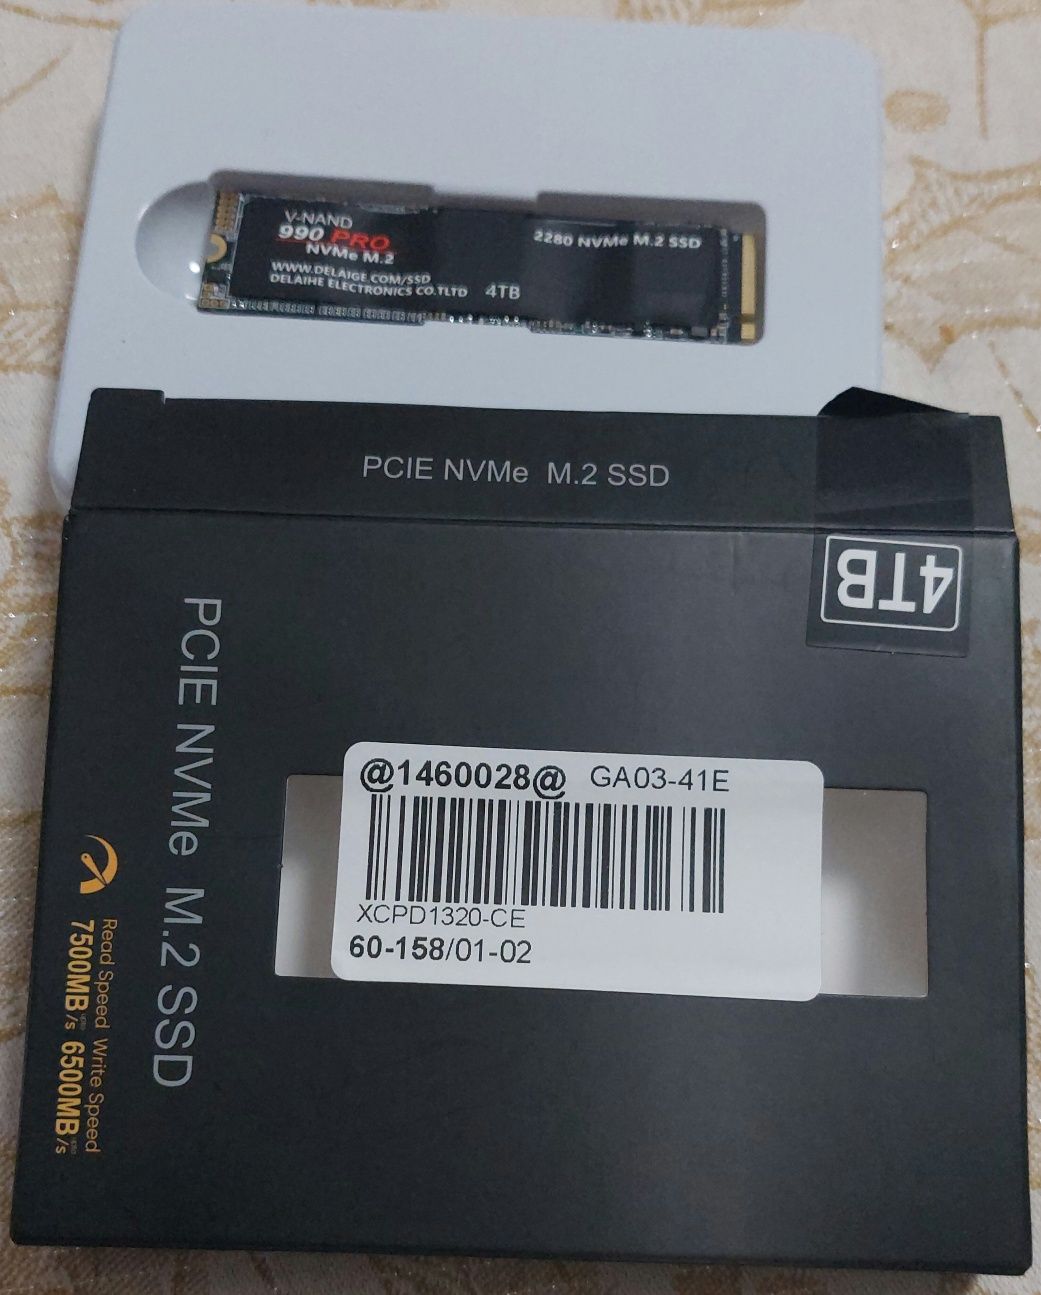 SSD V-Nand 990 PRO NVMe.2 4TB